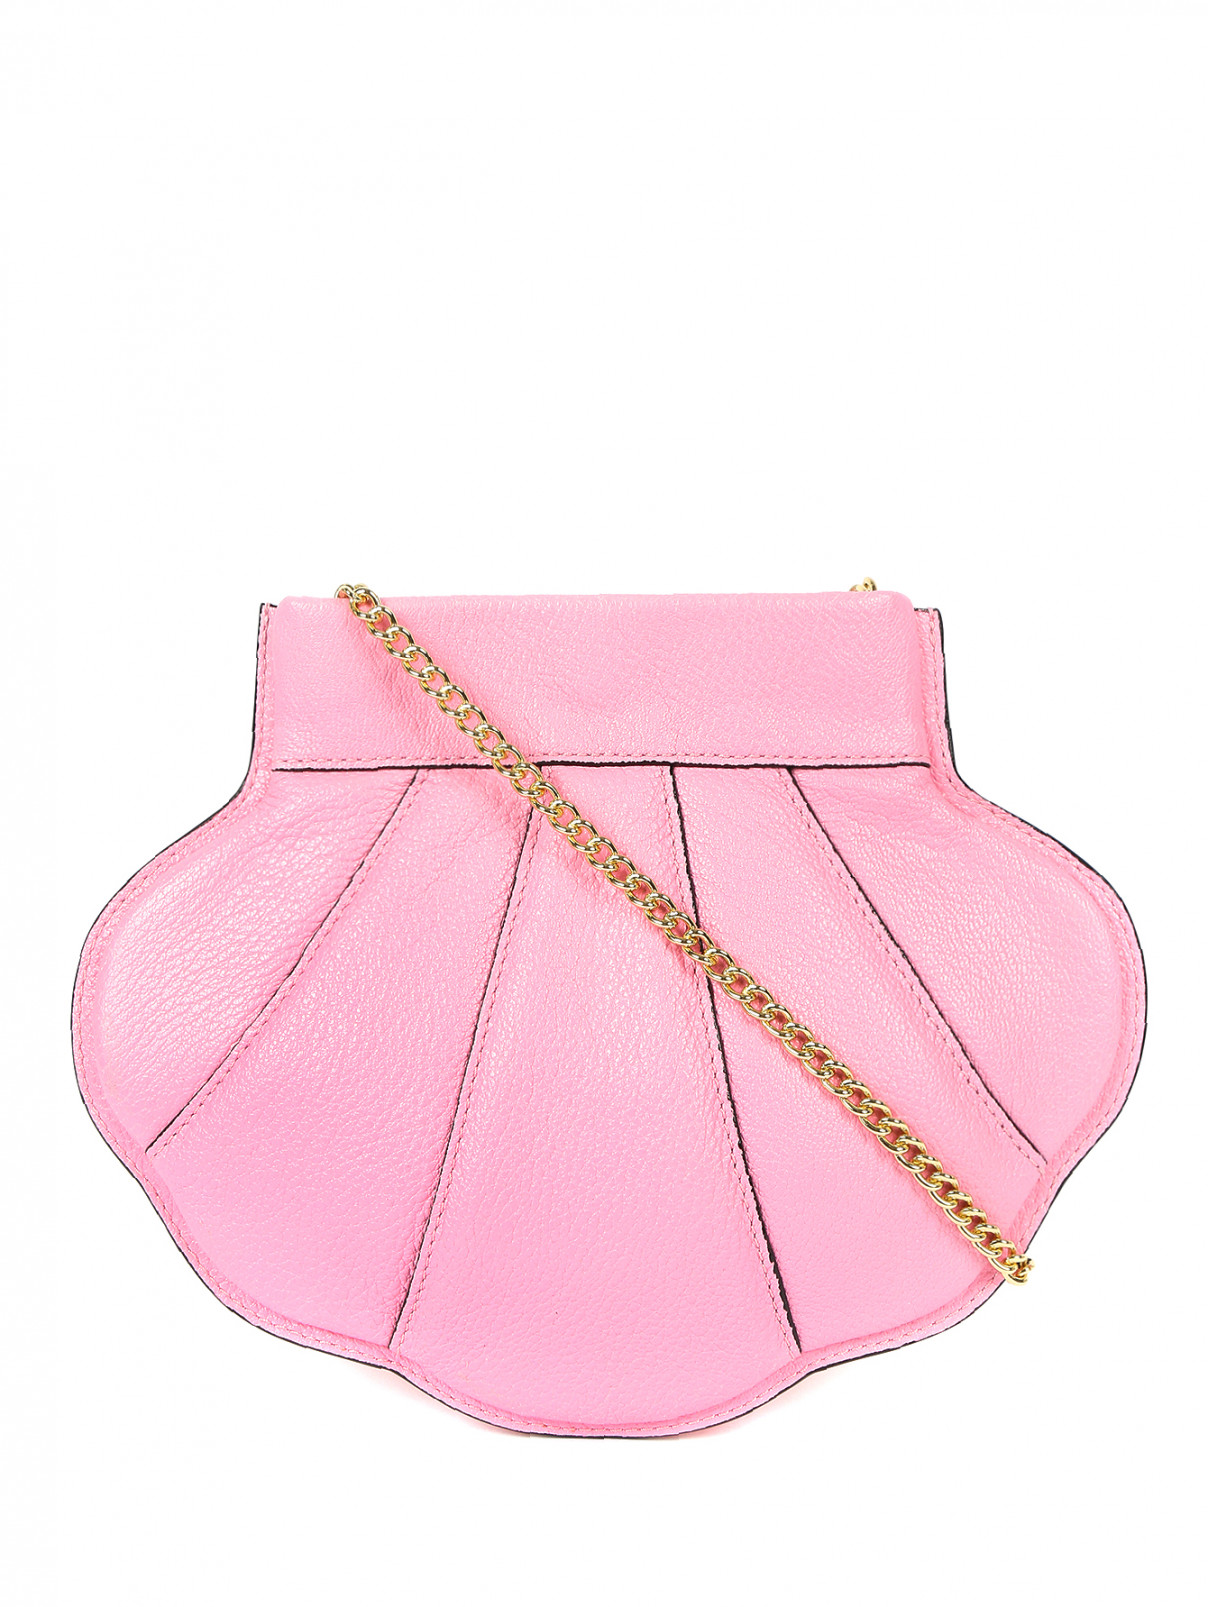 Сумка из кожи на цепочке Moschino Couture  –  Общий вид  – Цвет:  Розовый